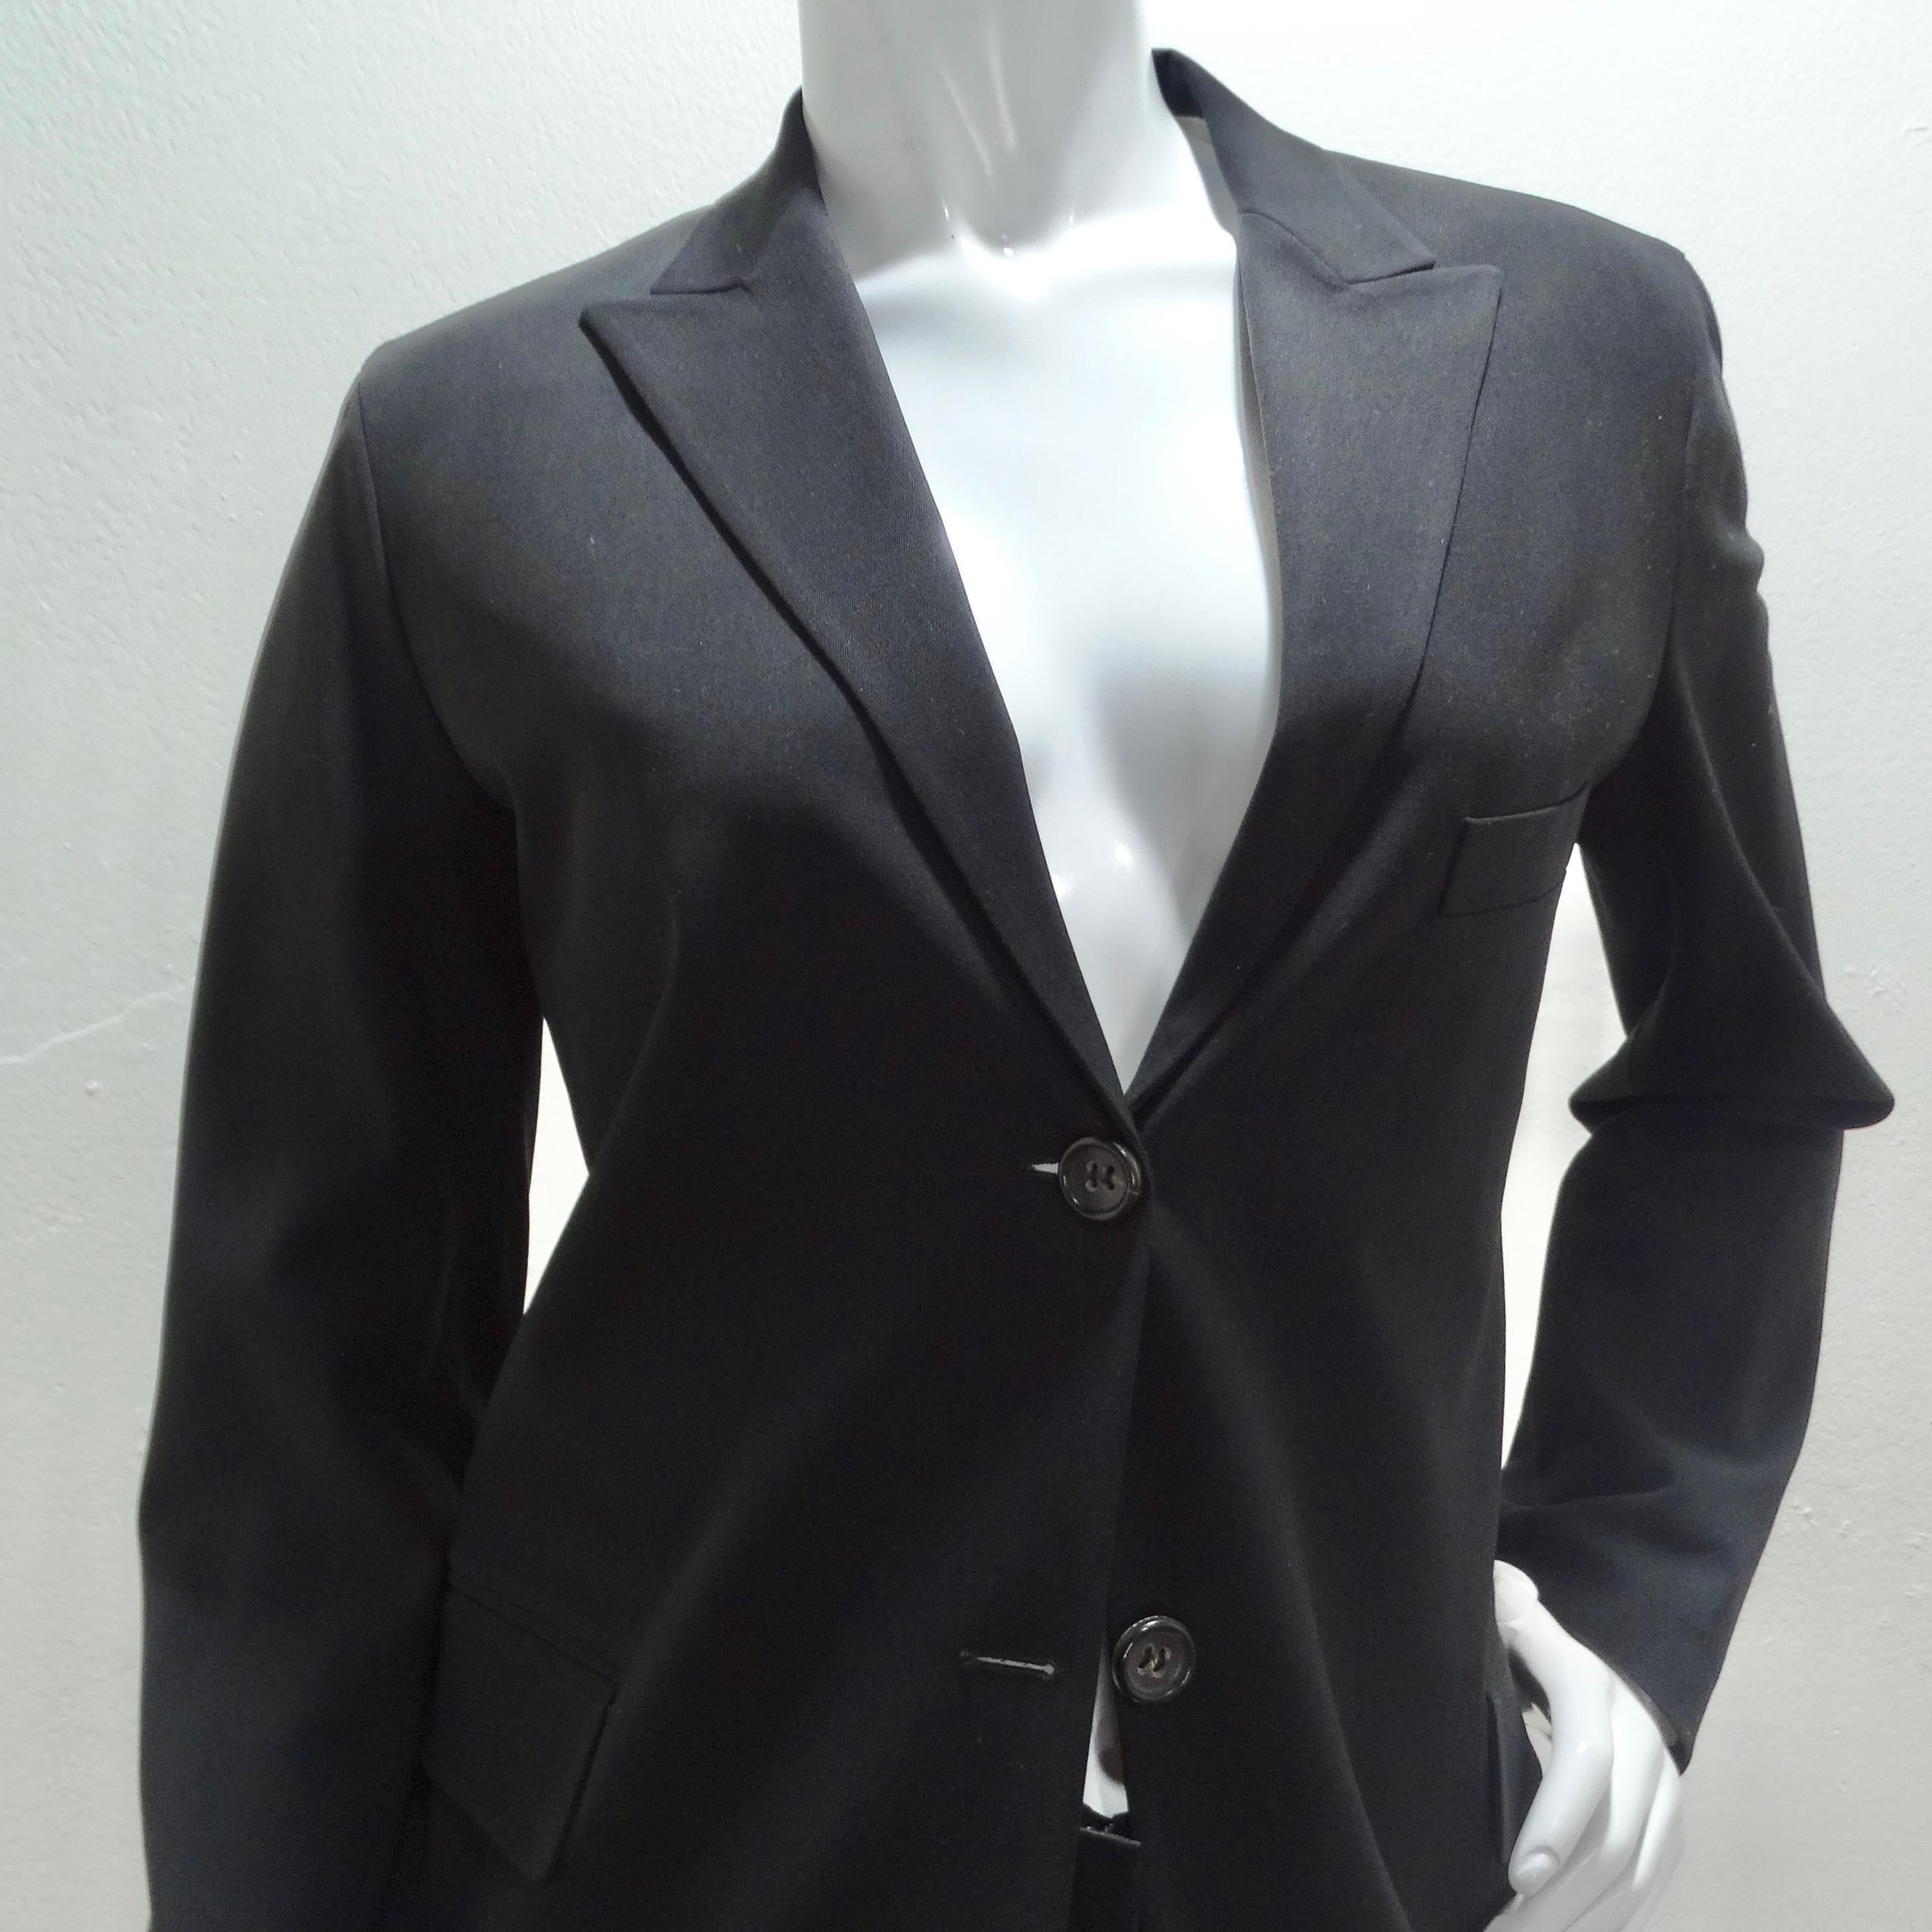 Rehaussez votre style avec cet ensemble blazer et pantalon noir des années 90 de Jill Sander ! Adoptez la sophistication intemporelle du blazer noir classique, orné d'un col, de boutons centraux et de poches pratiques. Ce pantalon flatteur à coupe